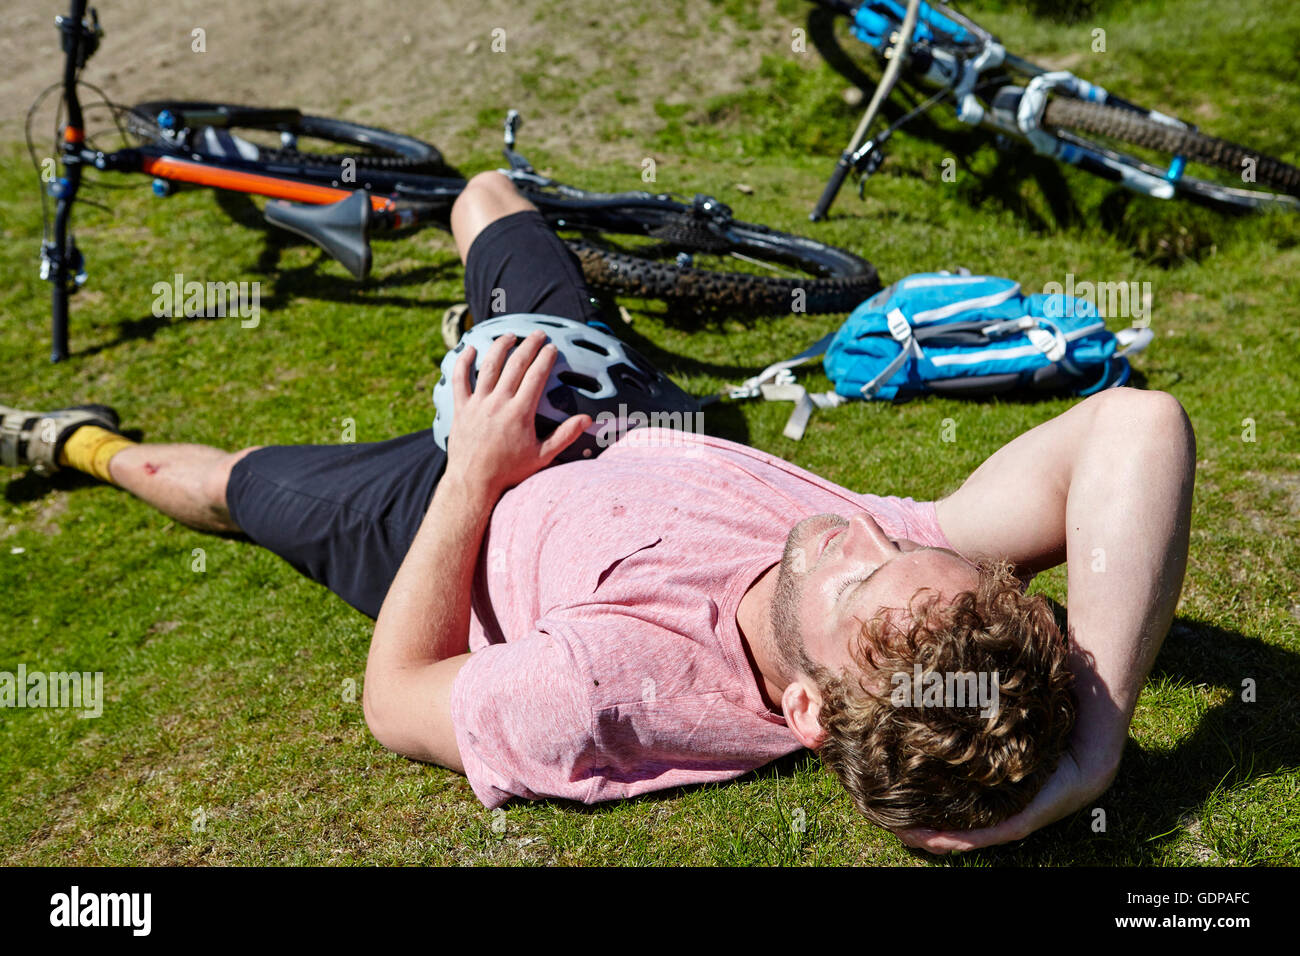 Radfahrer, die mit dem Fahrrad auf dem Rasen liegend Stockfoto